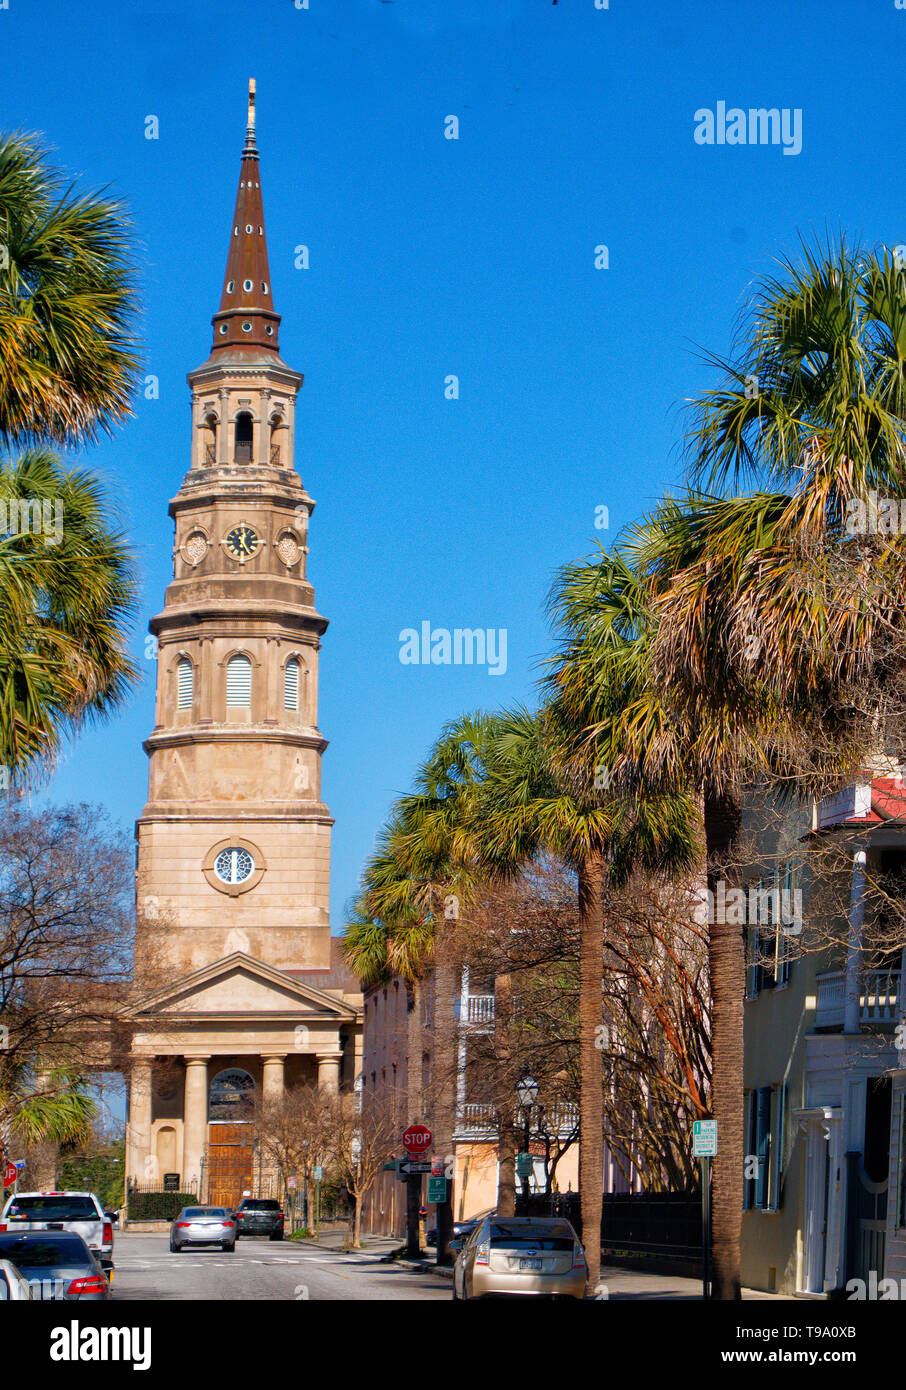 Église épiscopale Saint-Philippe, Charleston SC. Construit en 1836. Conçu dans la tradition Wren-Gibbs. Banque D'Images